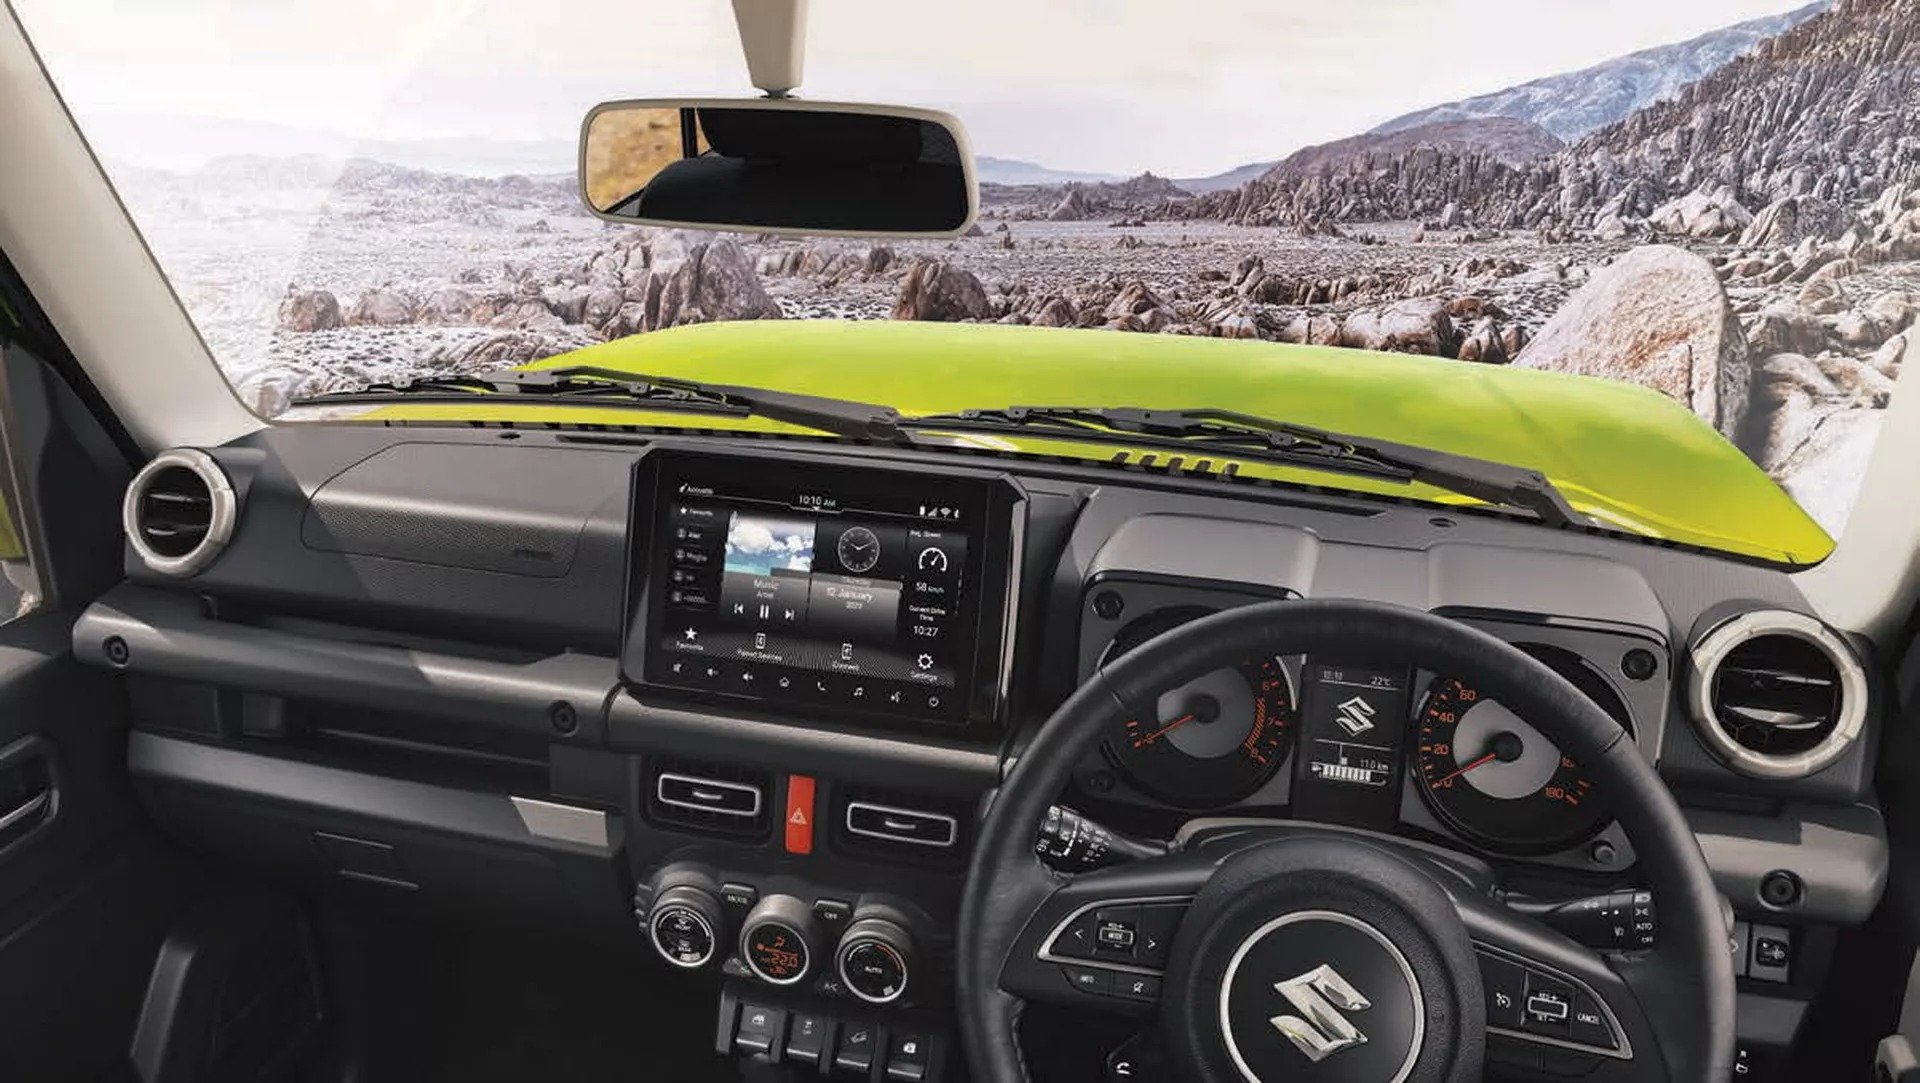 Suzuki Jimny chứng minh độ hot khi bị tranh giành mua dù chưa công bố giá bán - Ảnh 2.